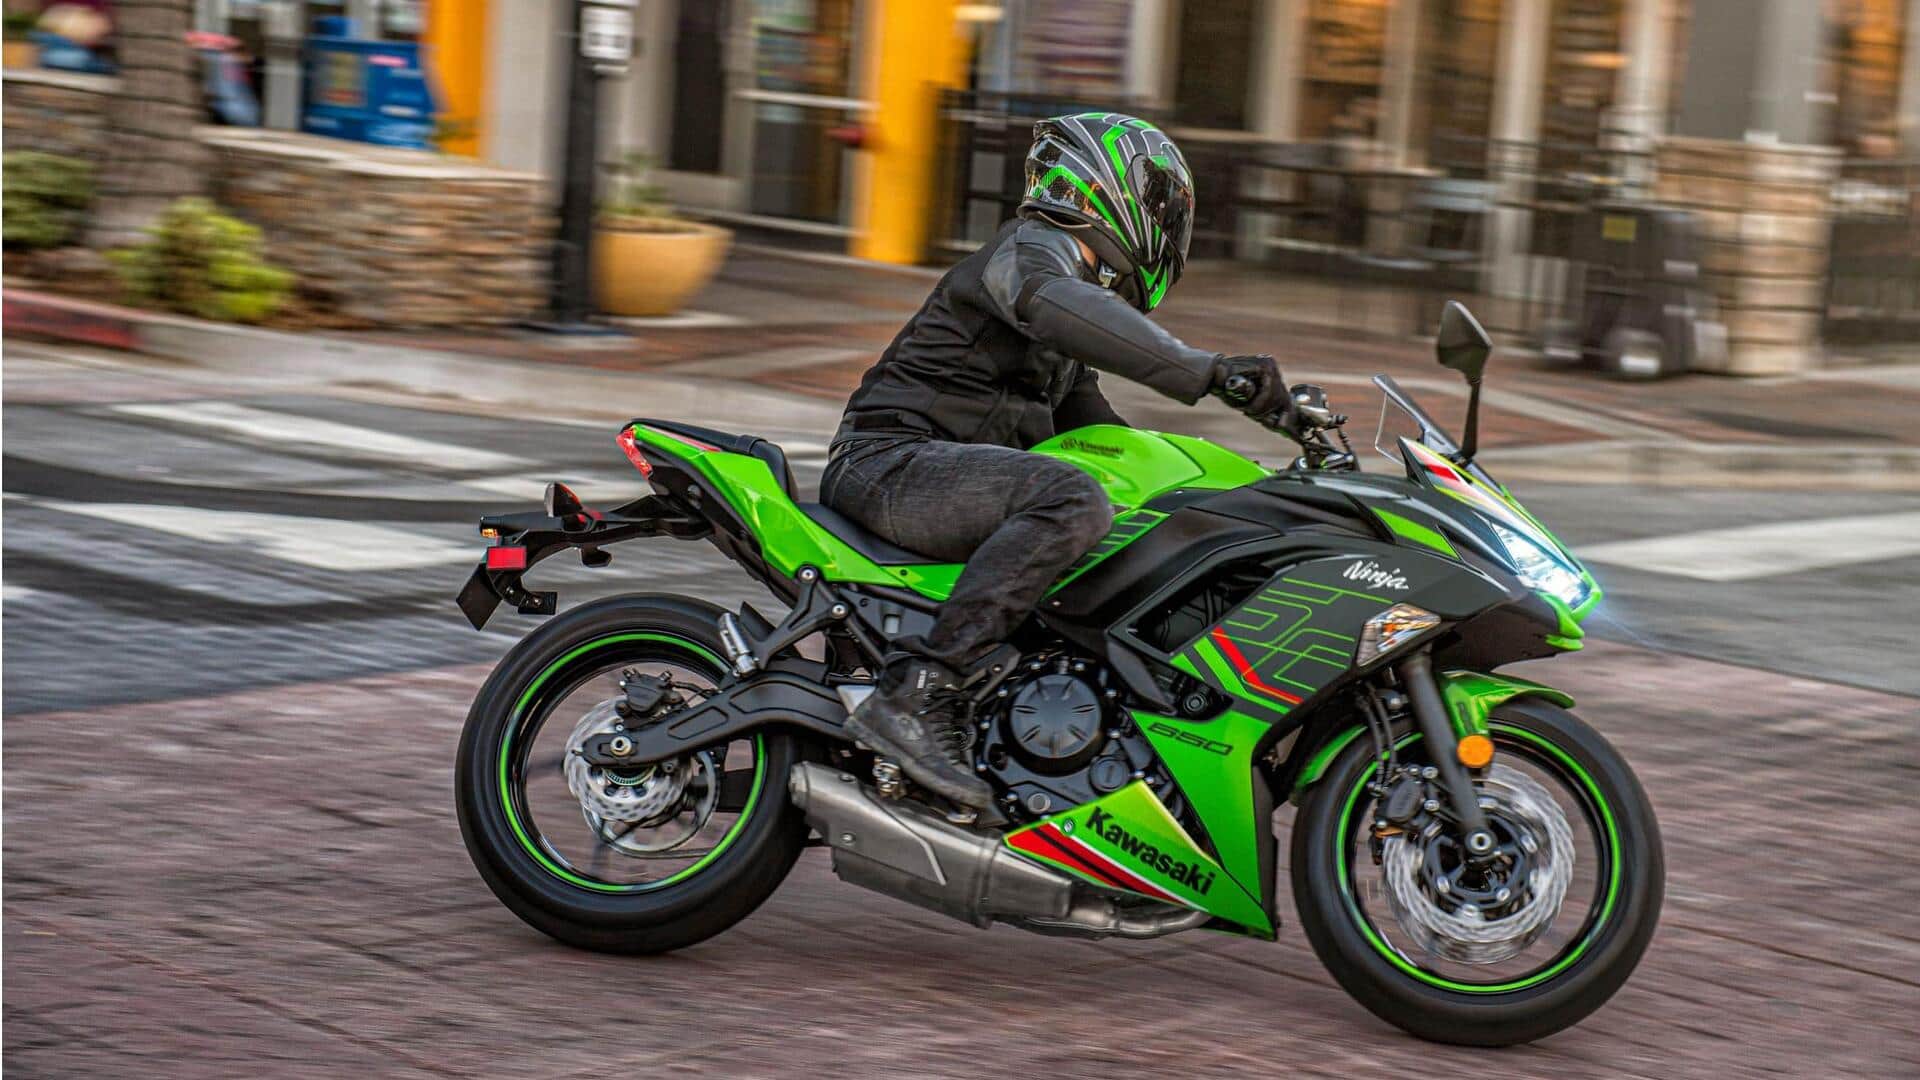 Kawasaki Ninja 650 gets cheaper by ₹30,000 this July